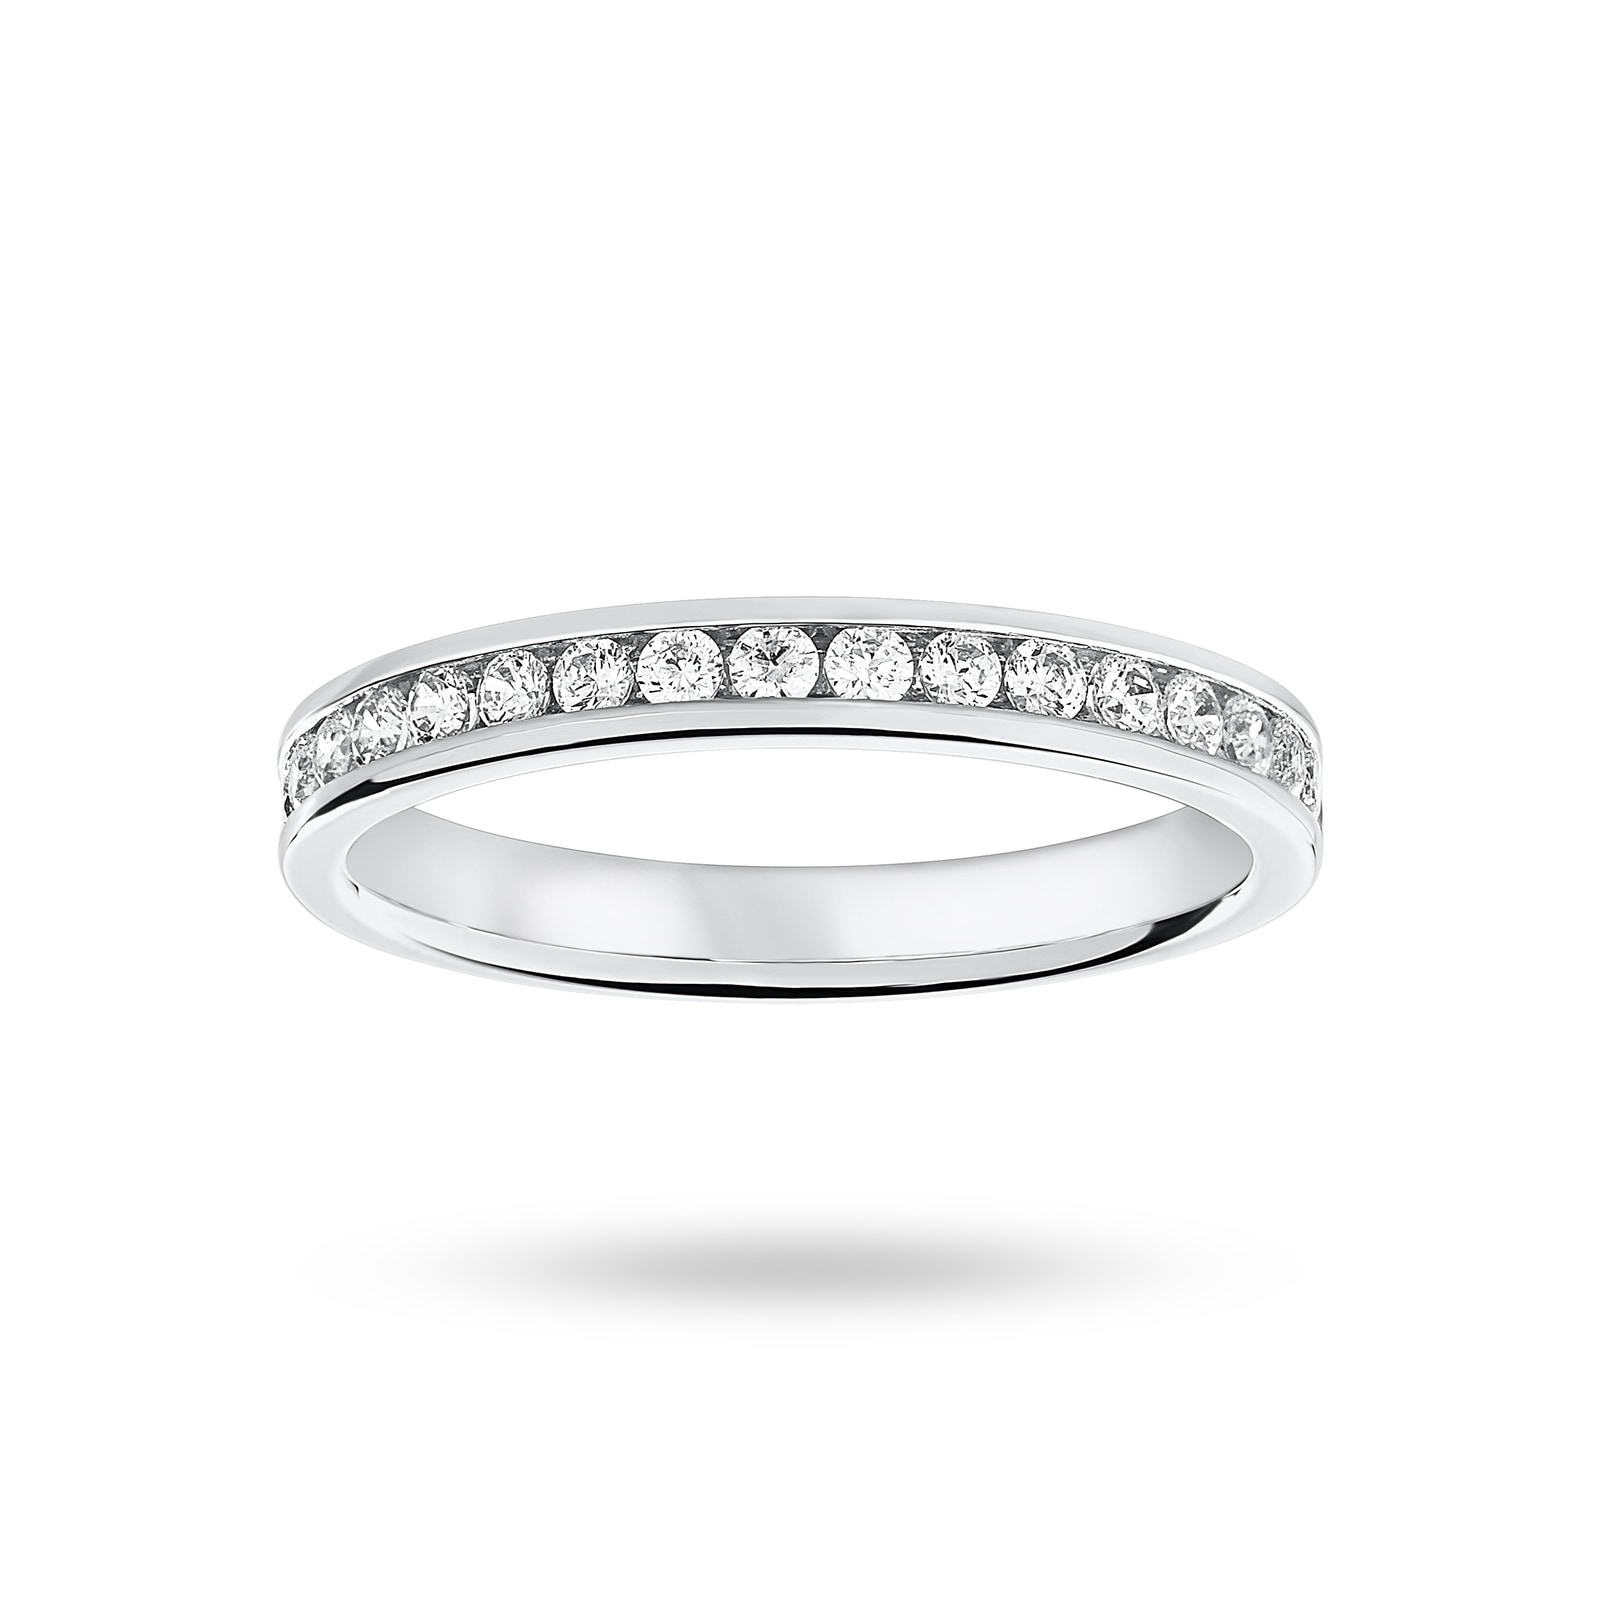 Platinum 0.33 Carat Brilliant Cut Half Eternity Ring - Ring Size N